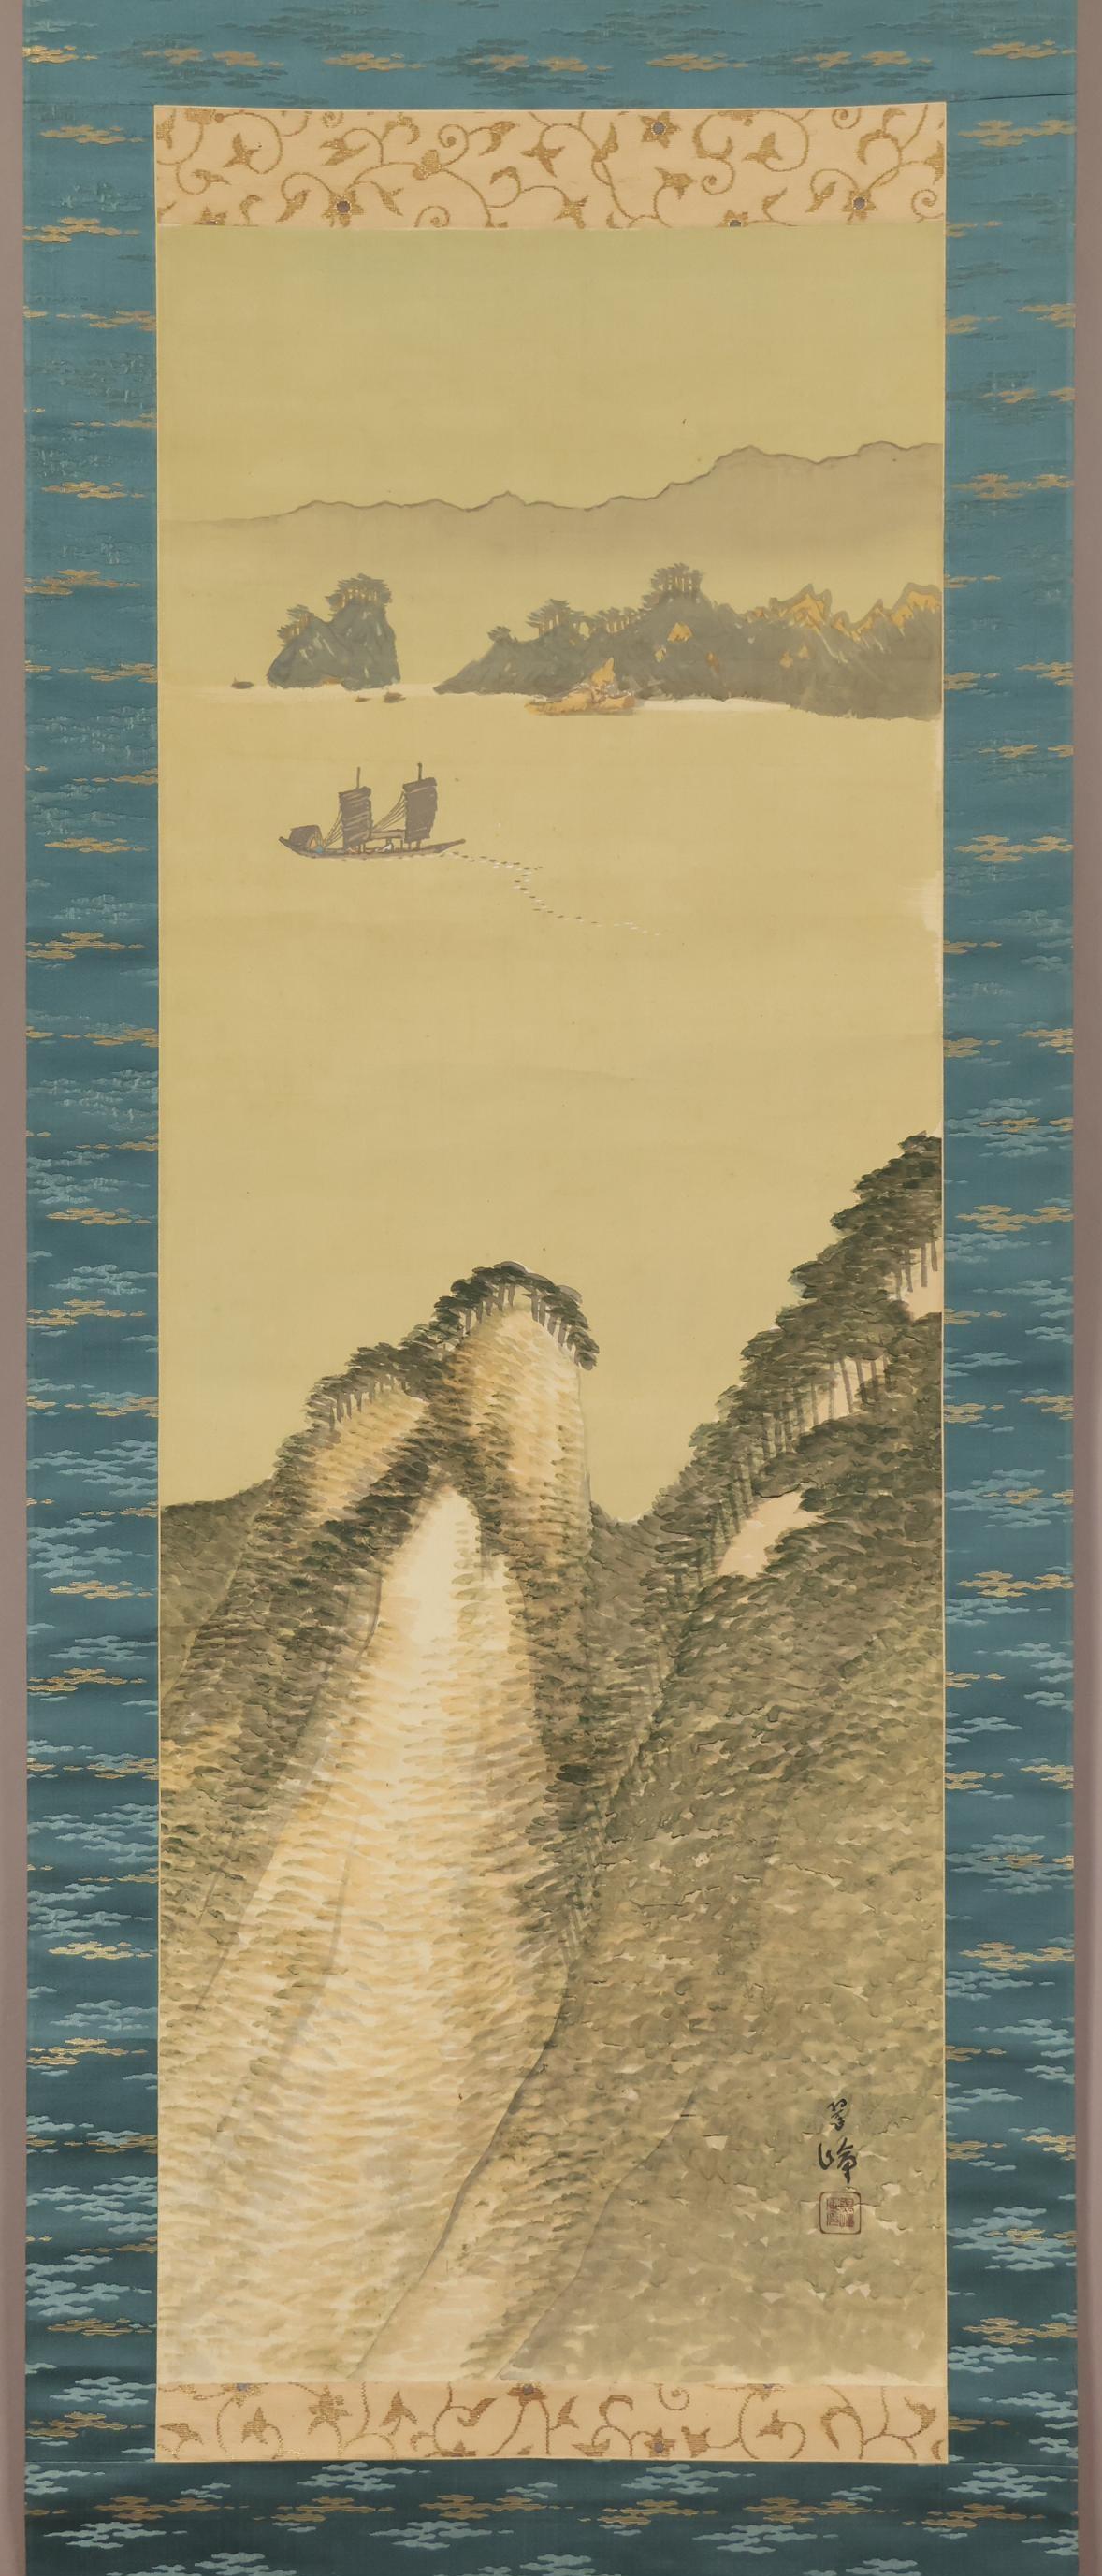 [Œuvre authentique] ◆ Suisho Nishiyama ◆ Paysage ◆ Peinture japonaise ◆ Kyoto ◆ Maître : Seiho Takeuchi ◆ Peinture à la main ◆ Volume de soie ◆ Rouleau suspendu ◆ Suisho Nishiyama

Suisho Nishiyama
[Valeur estimée de l'annuaire artistique : 8